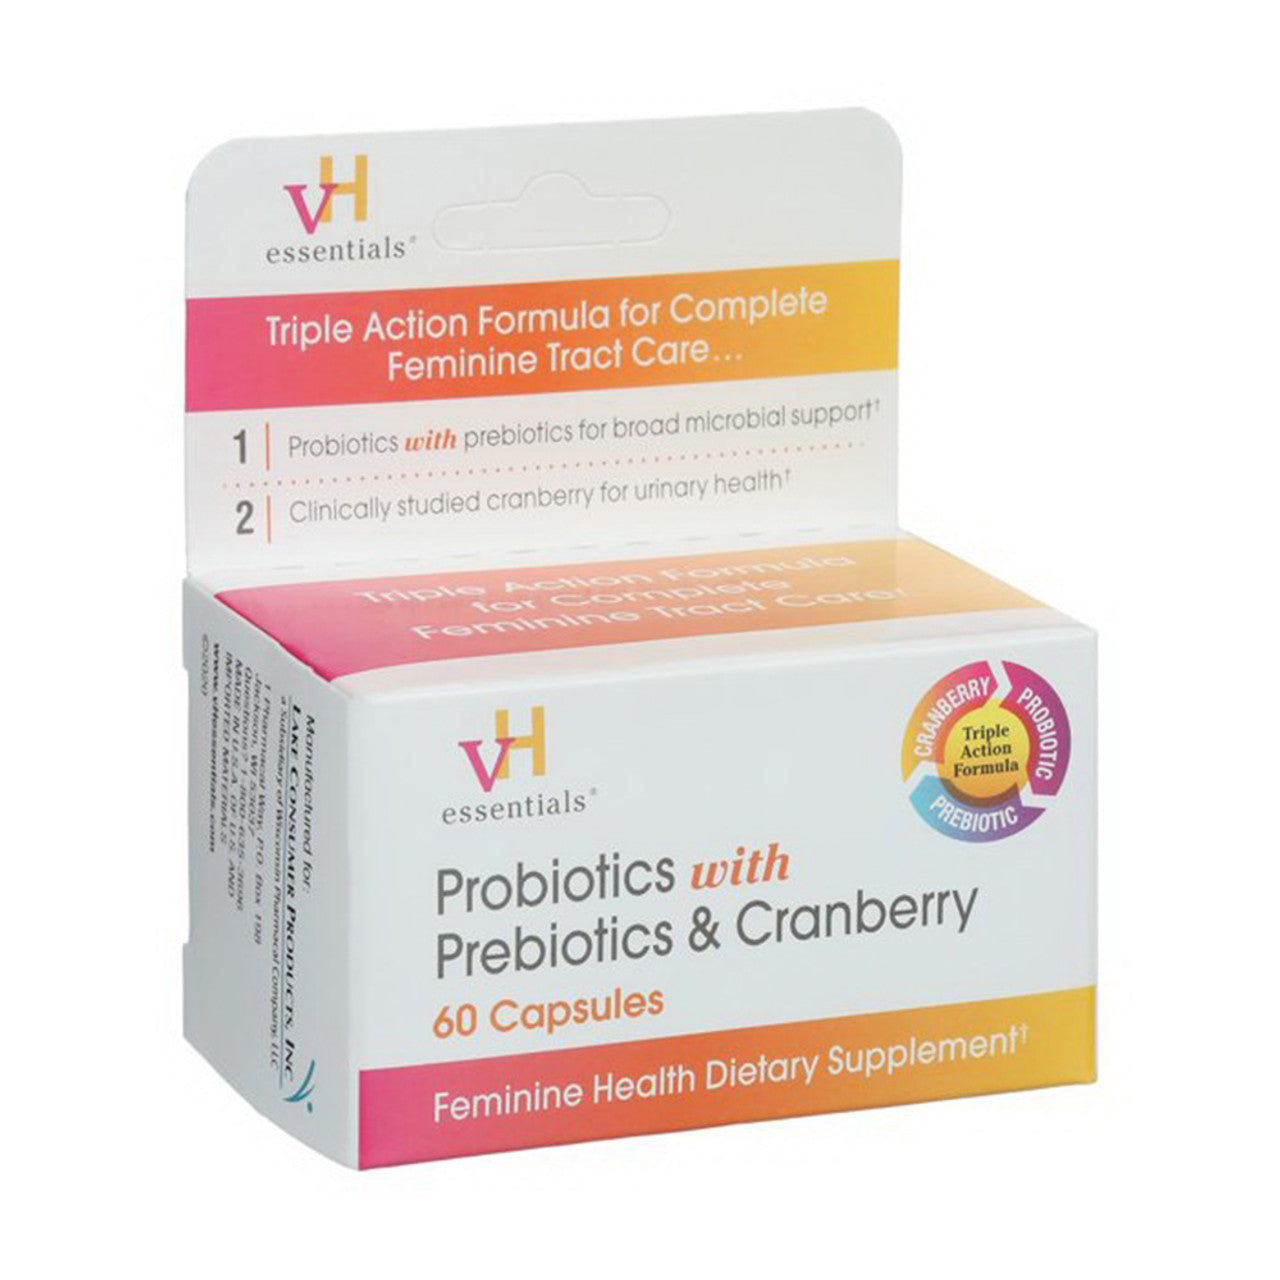 VH Essentials Probiotics With Prebiotics And Cranberry Feminine Health Capsules 60 Ea